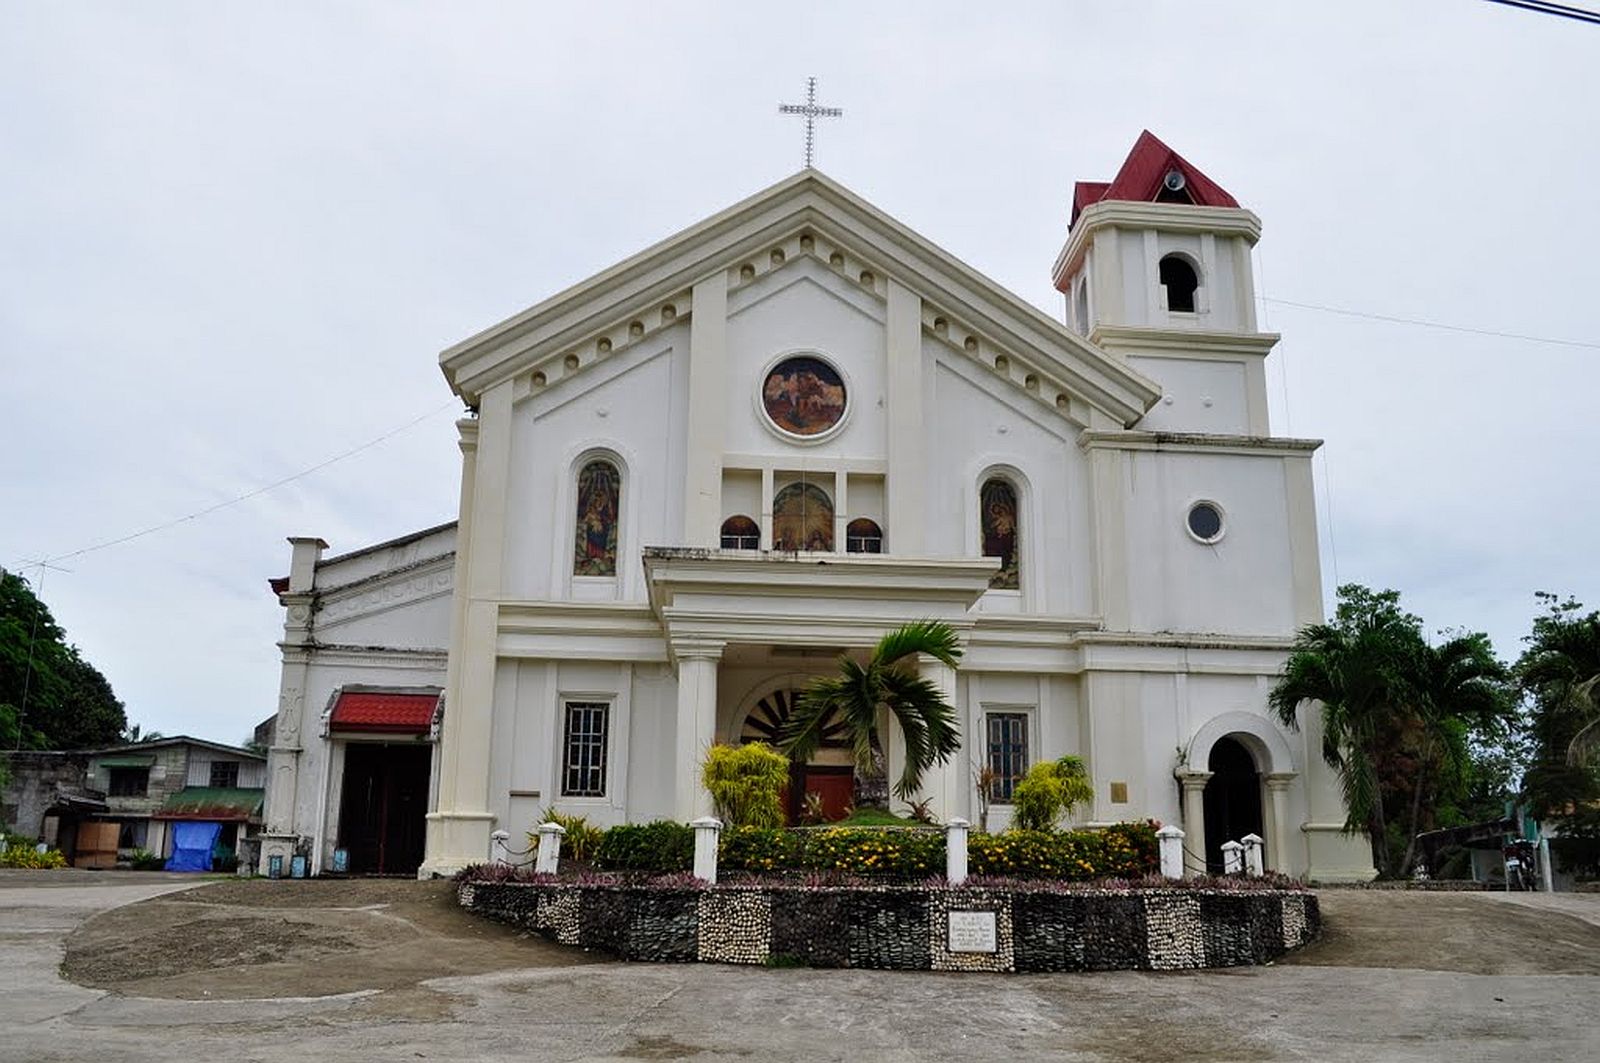 PHILIPPINEN REISEN - ORTE - BOHOL - Touristische Ortsbeschreibung für Clarin